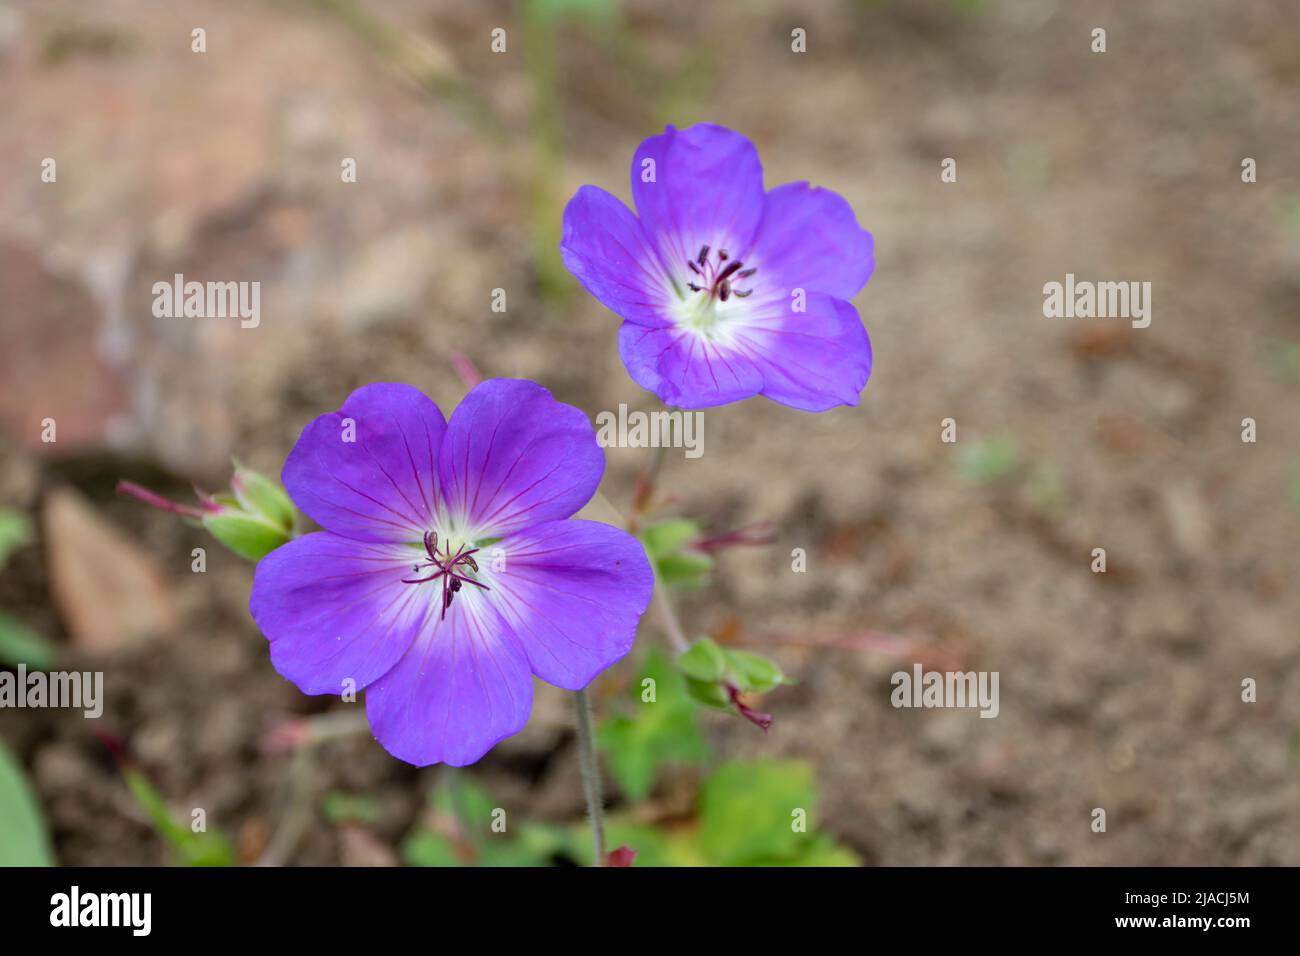 Flores de geranio púrpura o de pico de craneo en primer plano sobre el fondo borroso Foto de stock